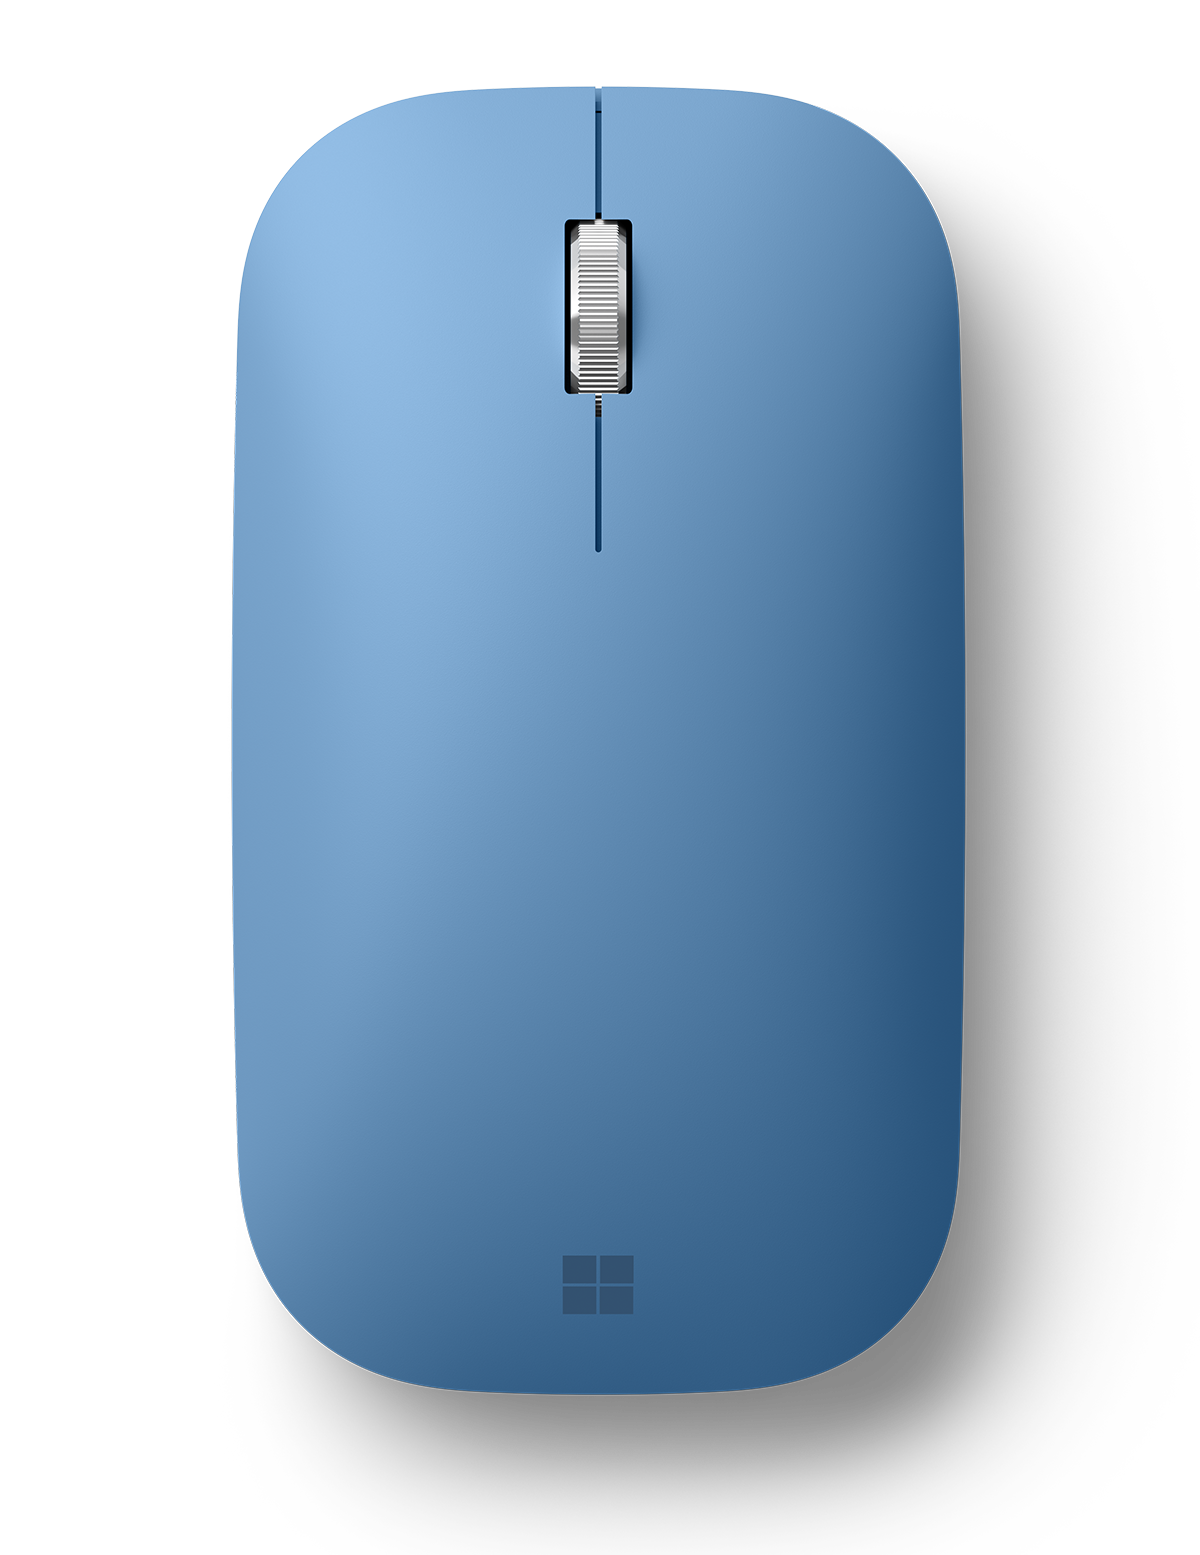 Souris sans fil MICROSOFT Microsoft Souris Surface mobile mouse platine Pas  Cher 